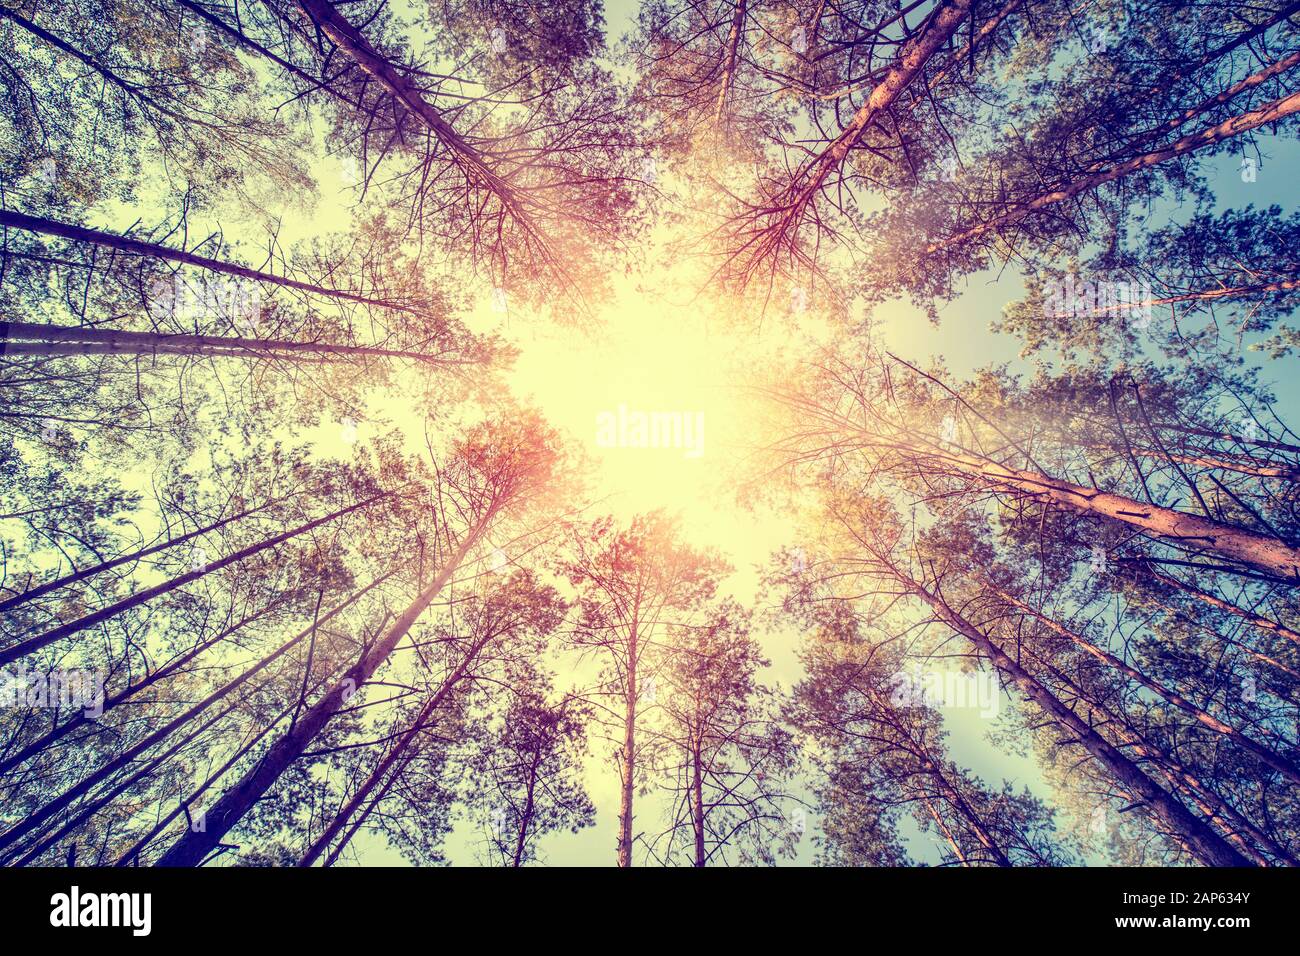 Les arbres forestiers la croissance du pin retro vintage tout droit du soleil - woodlands cèdre stock image Banque D'Images